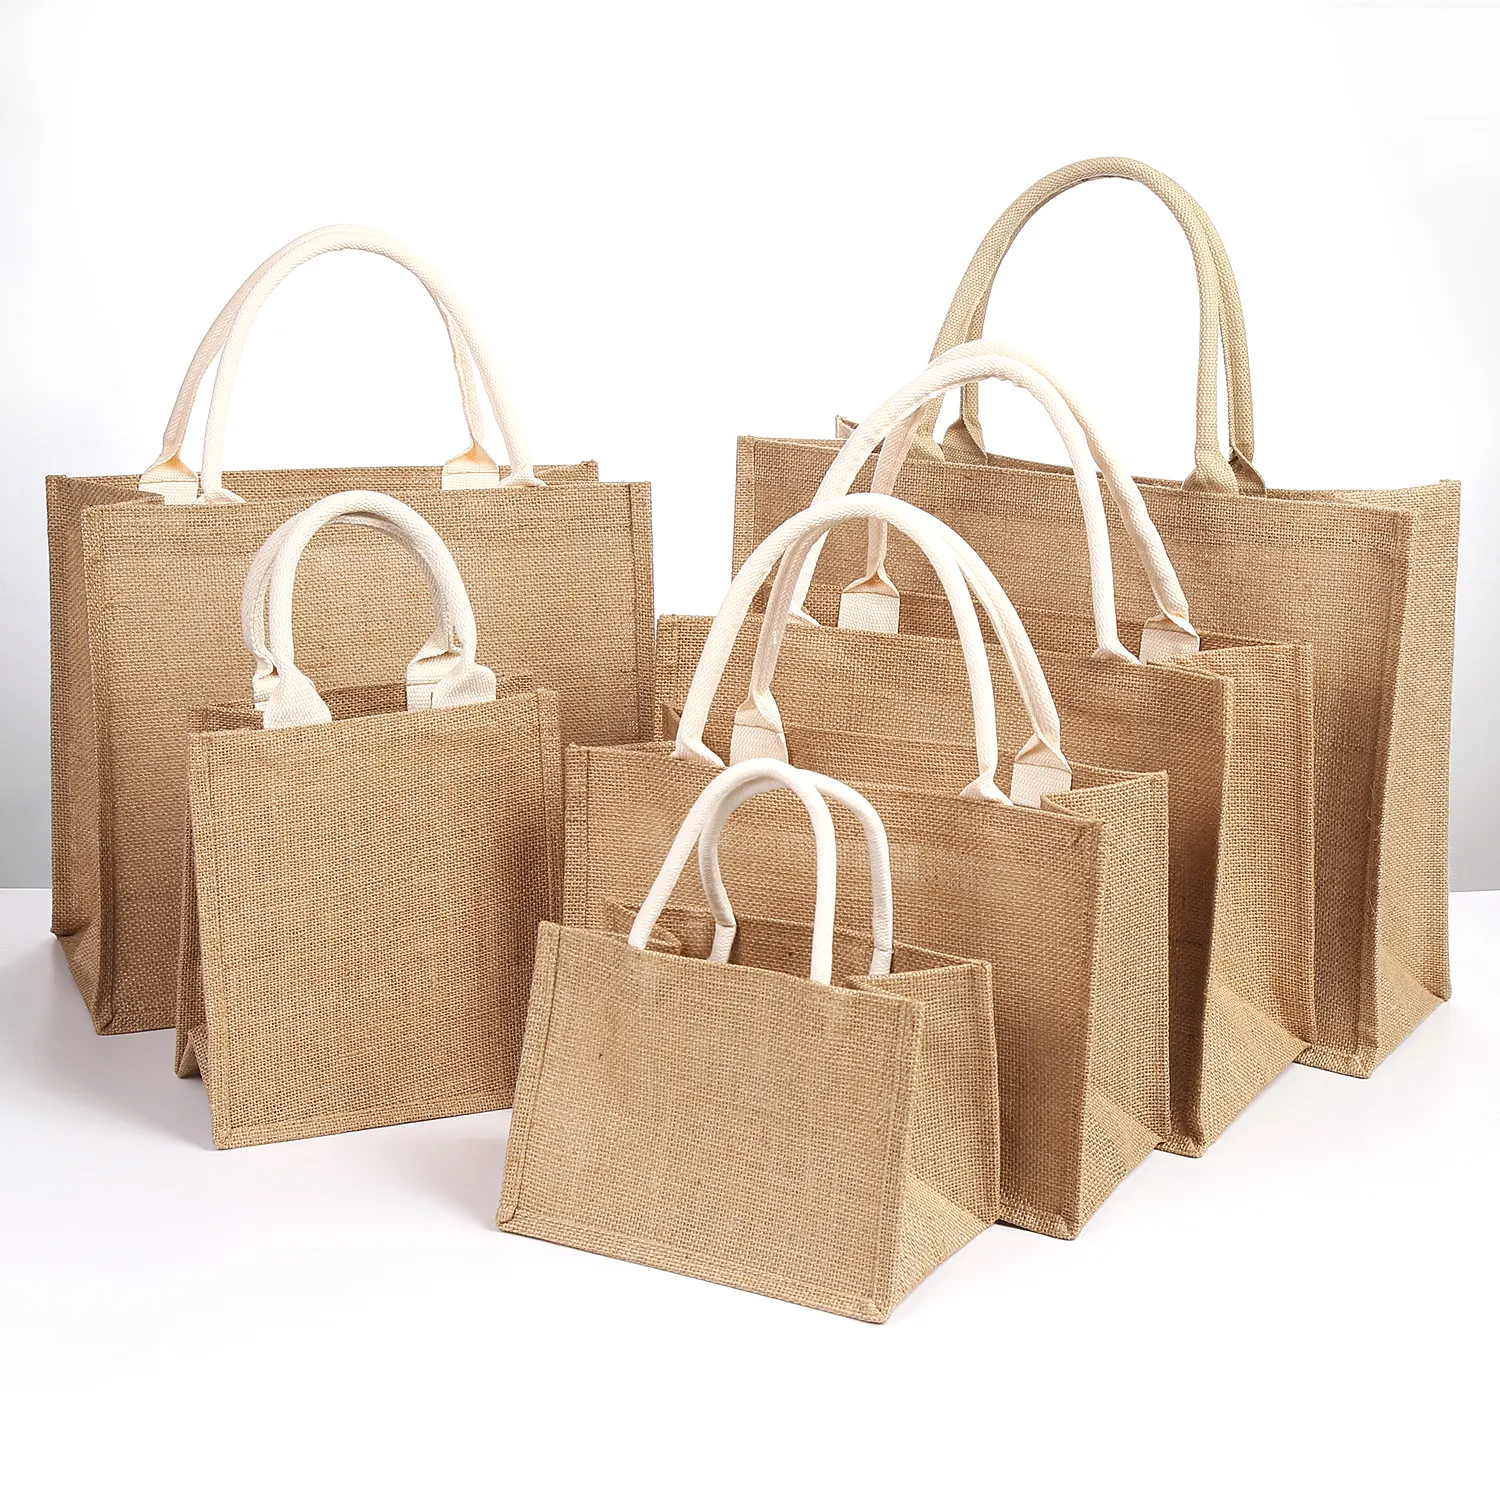 Buona vendita della fabbrica cinese borse in tela personalizzate riciclabili in juta borse per la vendita di borse per la spesa